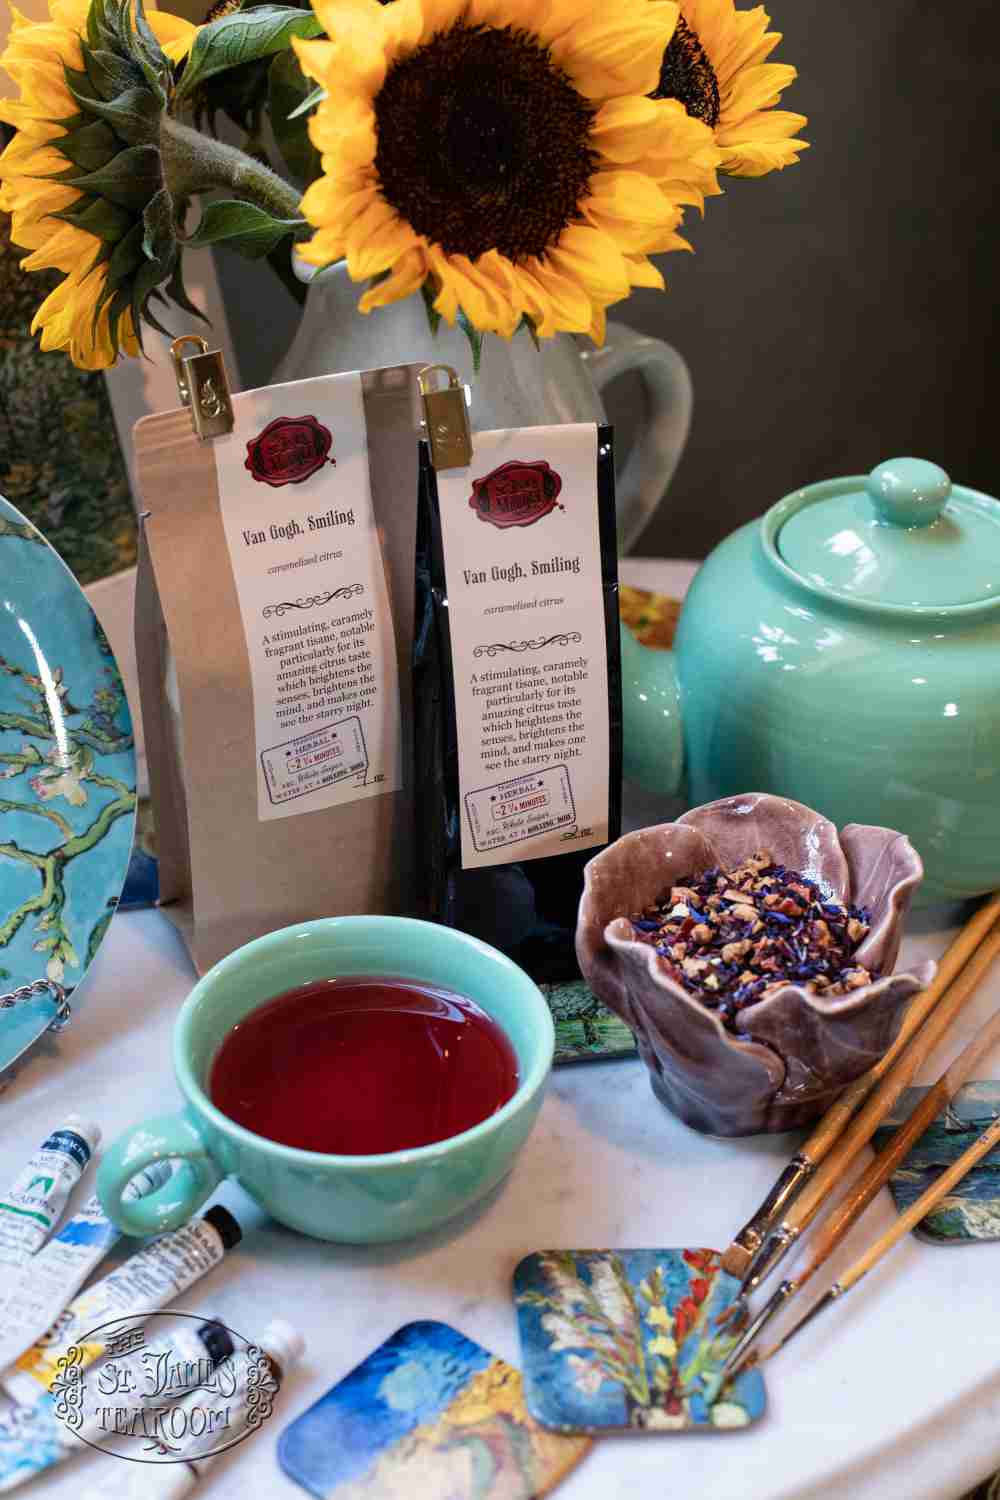 Online Tea Shop Buy Herbal Teas and Tisanes Princess Teas - Van Gogh Smiling